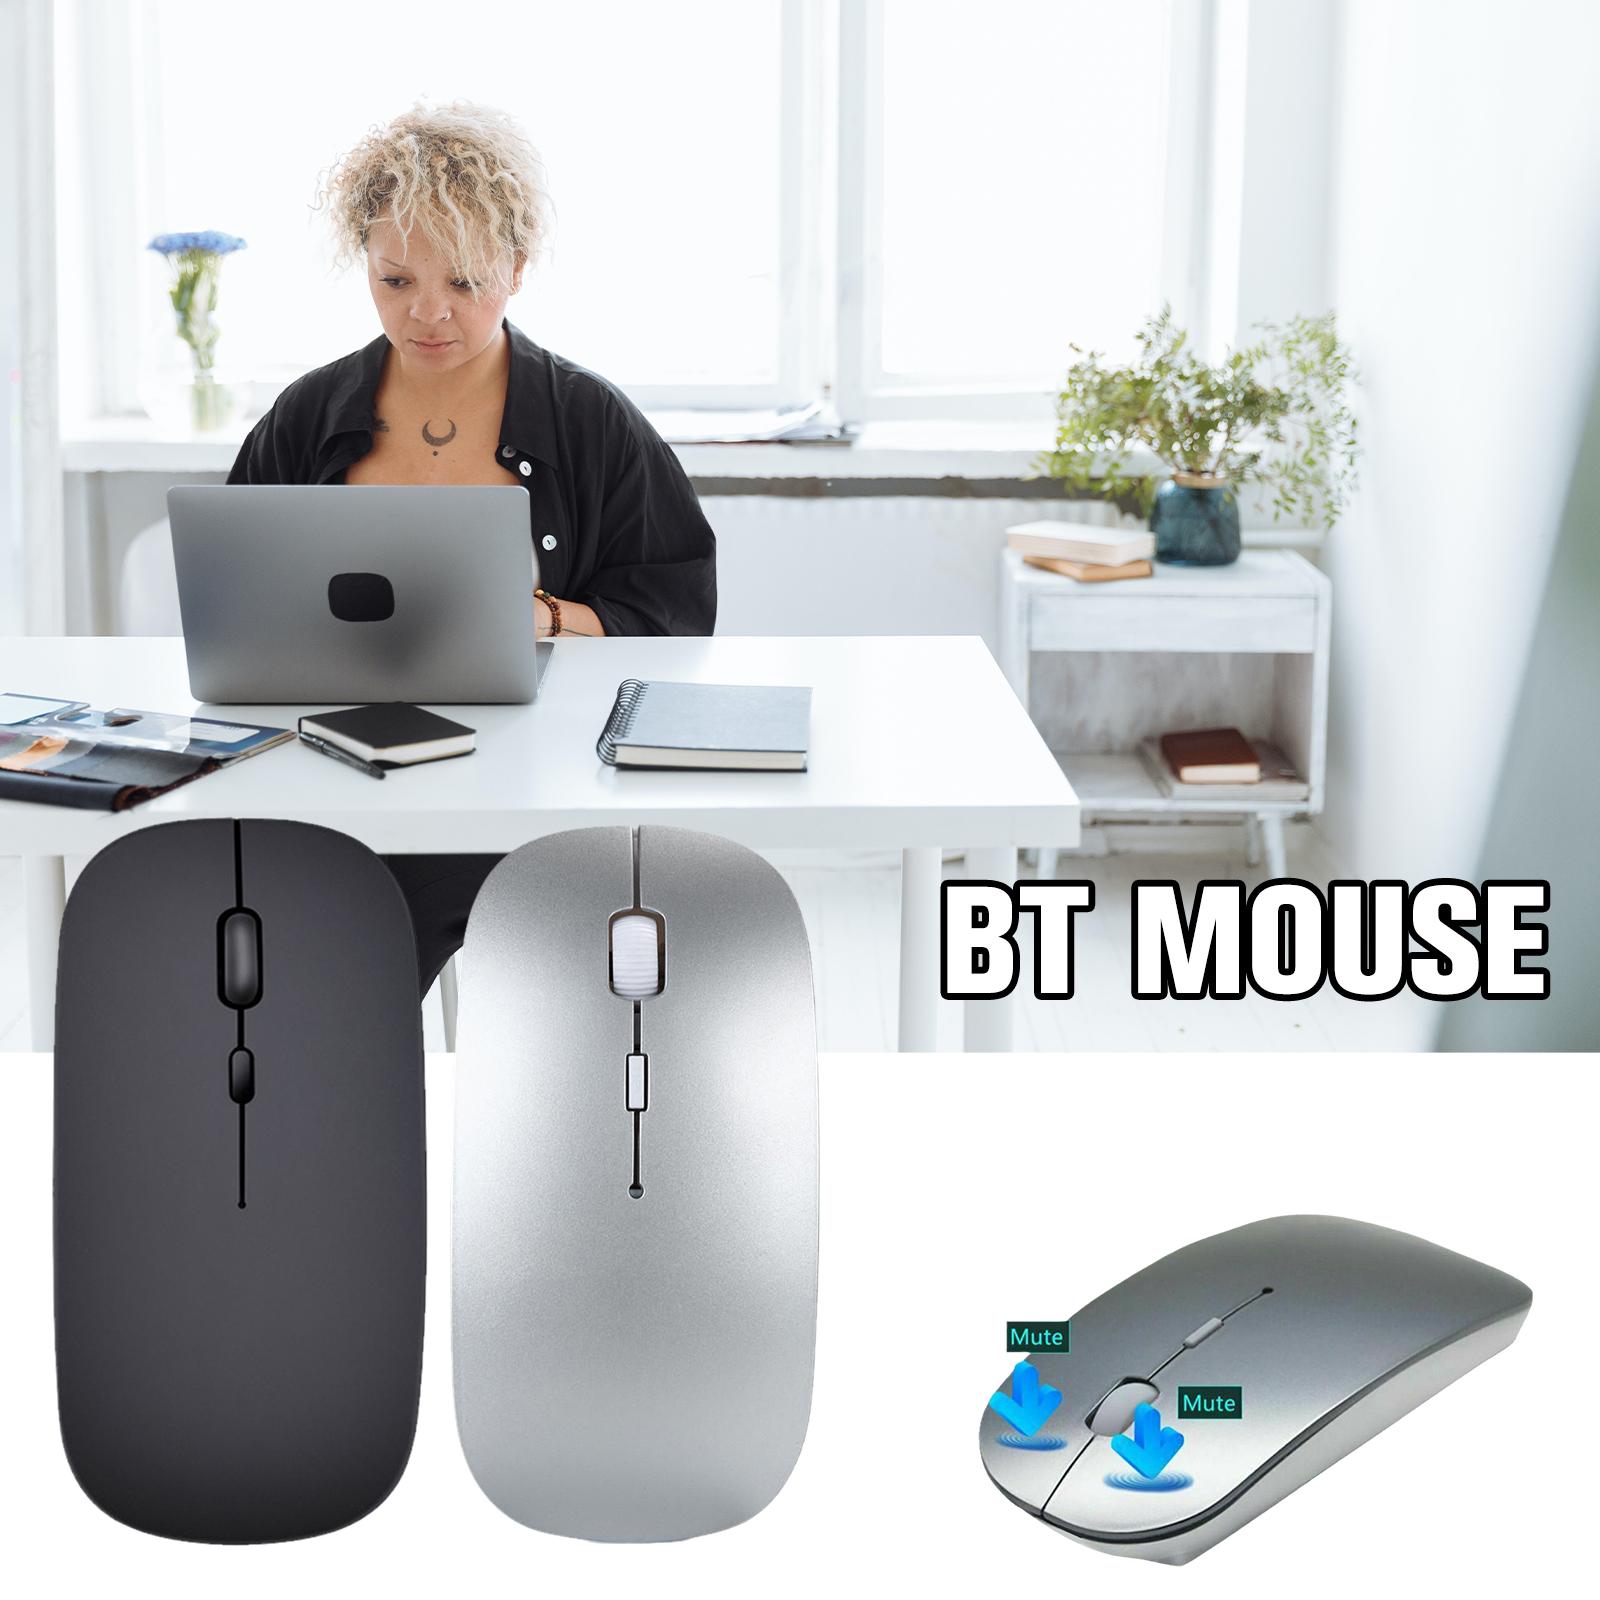 새로운 Bluetooth 충전식 무선 마우스 2.4GHz USB 어댑터 노트북 컴퓨터 홈 오피스 데스크톱 인체 공학적 마우스 용 듀얼 모드